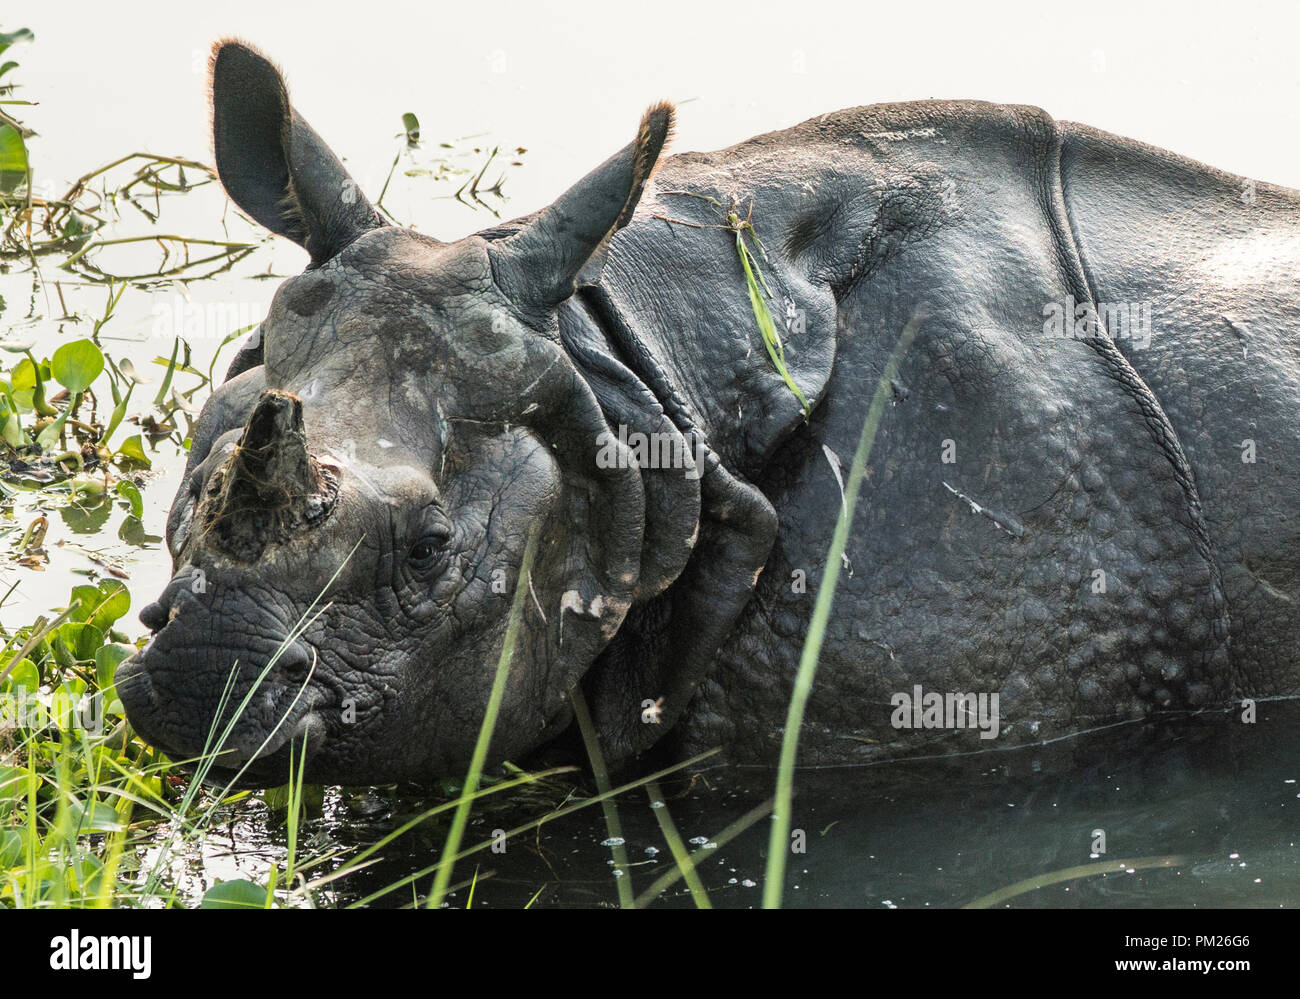 Rhinocéros indien Rhinoceros unicornis ou rhinocéros à une corne, grand rhinocéros indien dans un marais. La photographie d'espèces sauvages en Asie Banque D'Images